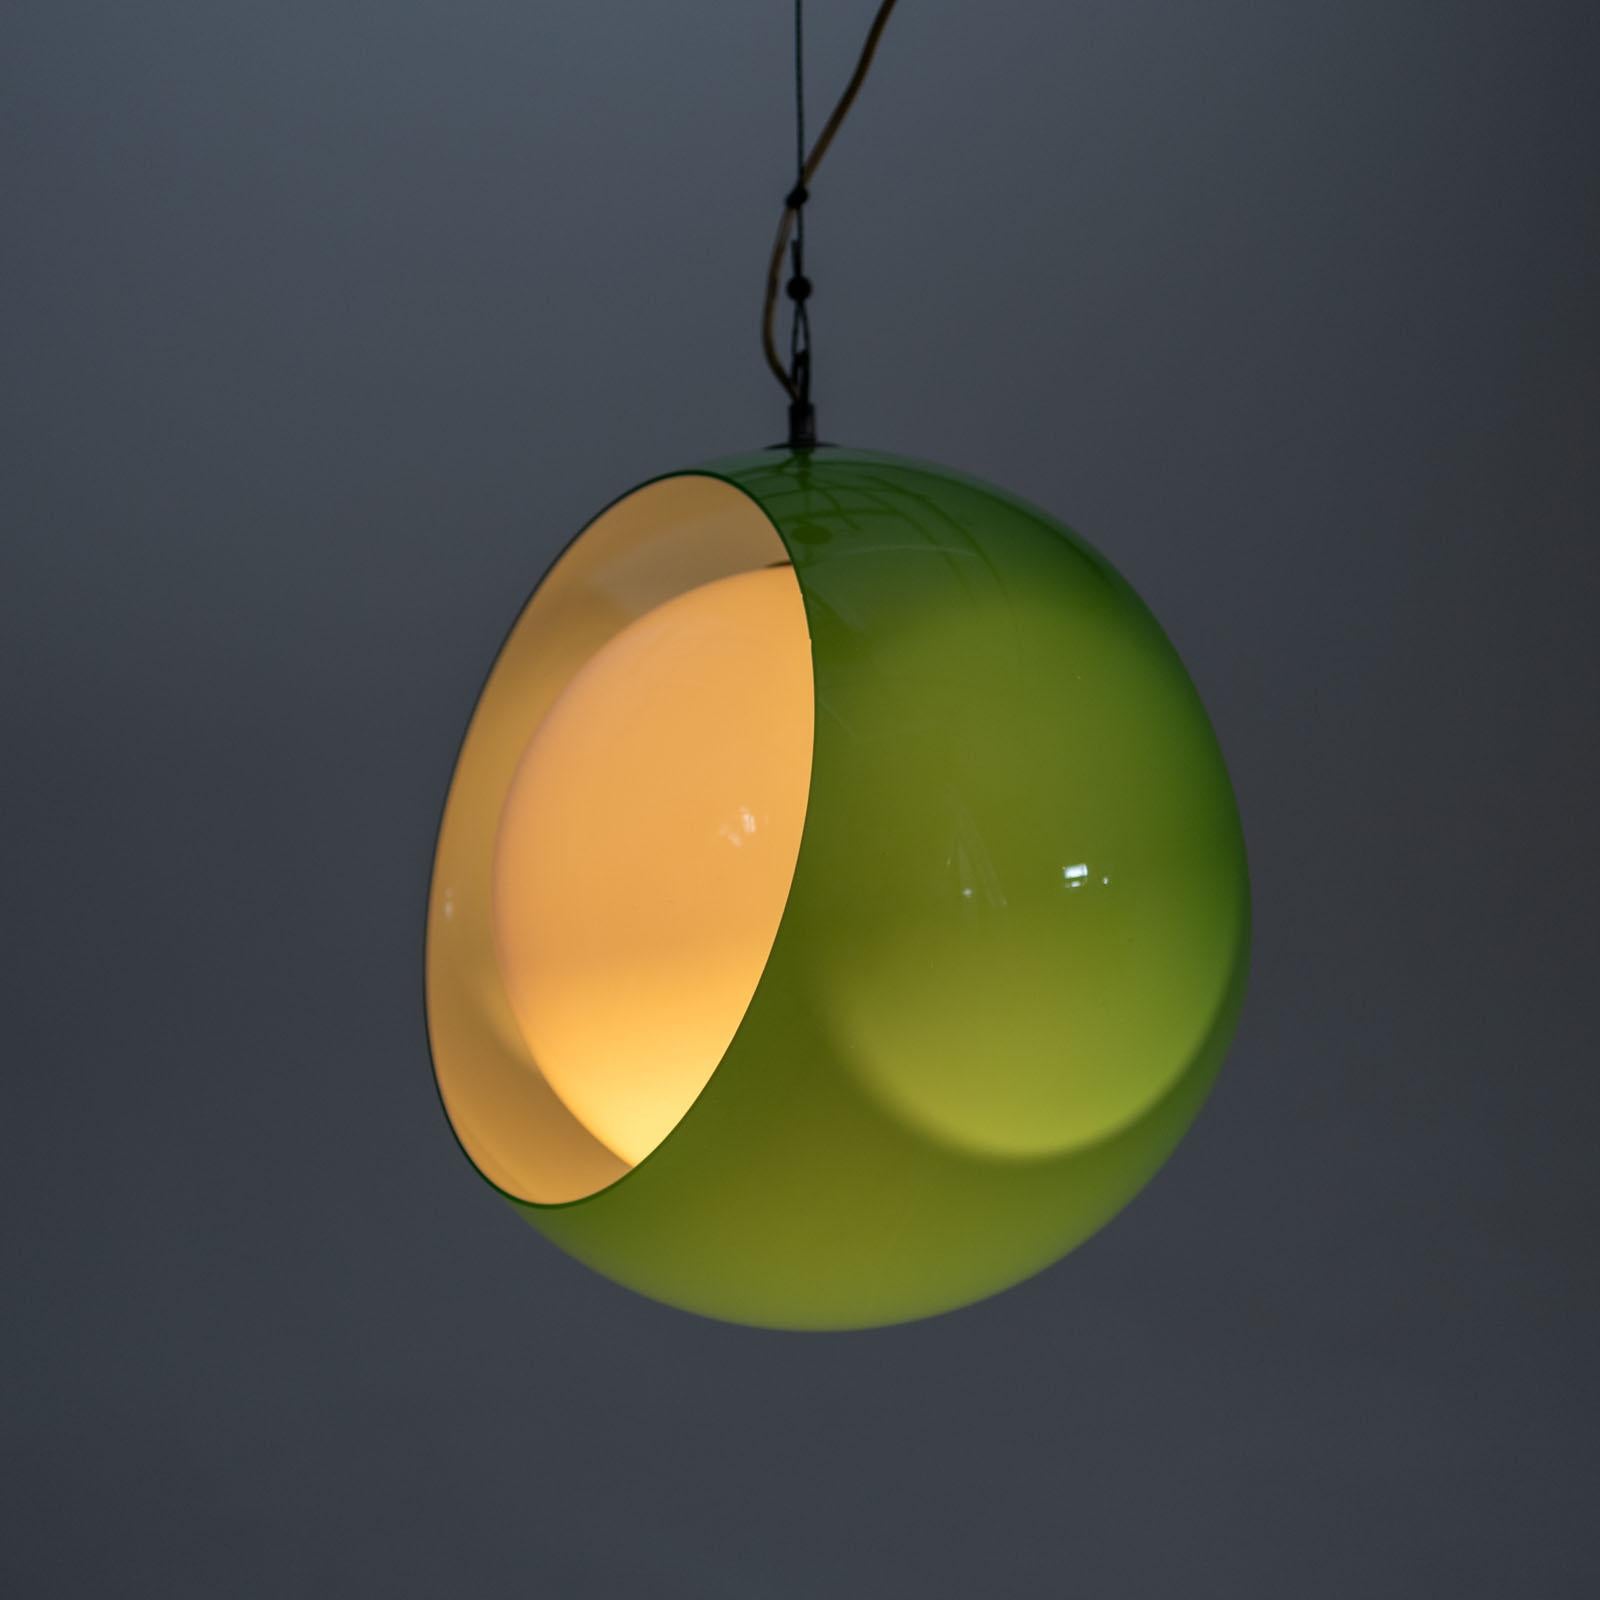 Hängelampe aus grünem Muranoglas, entworfen von Carlo Nason für Mazzega in den 1960er Jahren. Die Leuchte besteht aus zwei Glasbügeln, die nach Belieben gedreht werden können, so dass die einzelne Glühbirne auch komplett verdeckt werden kann. 